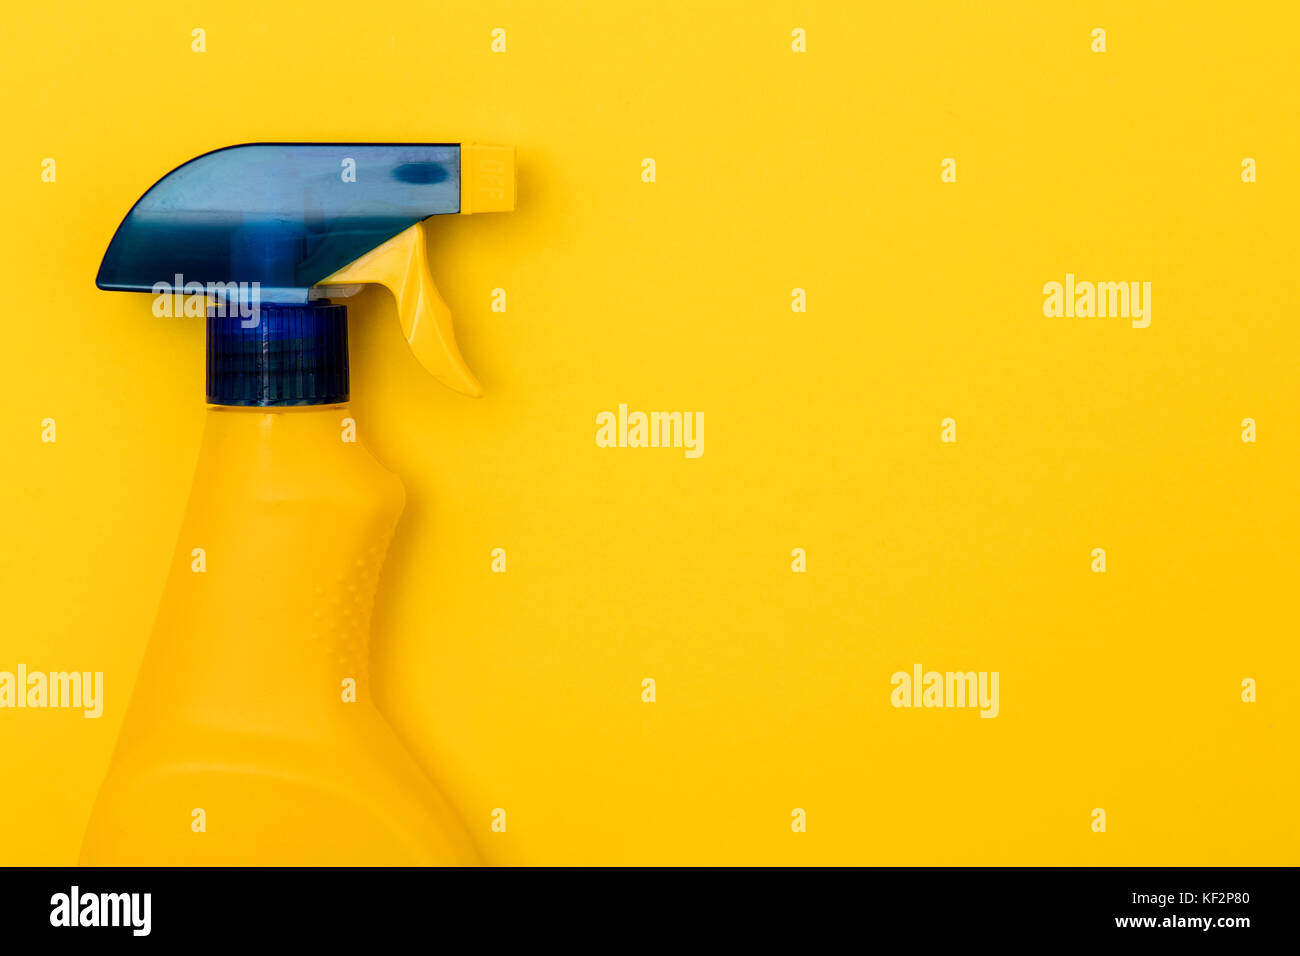 Botella de spray limpiador de productos sobre un fondo de color amarillo brillante Foto de stock